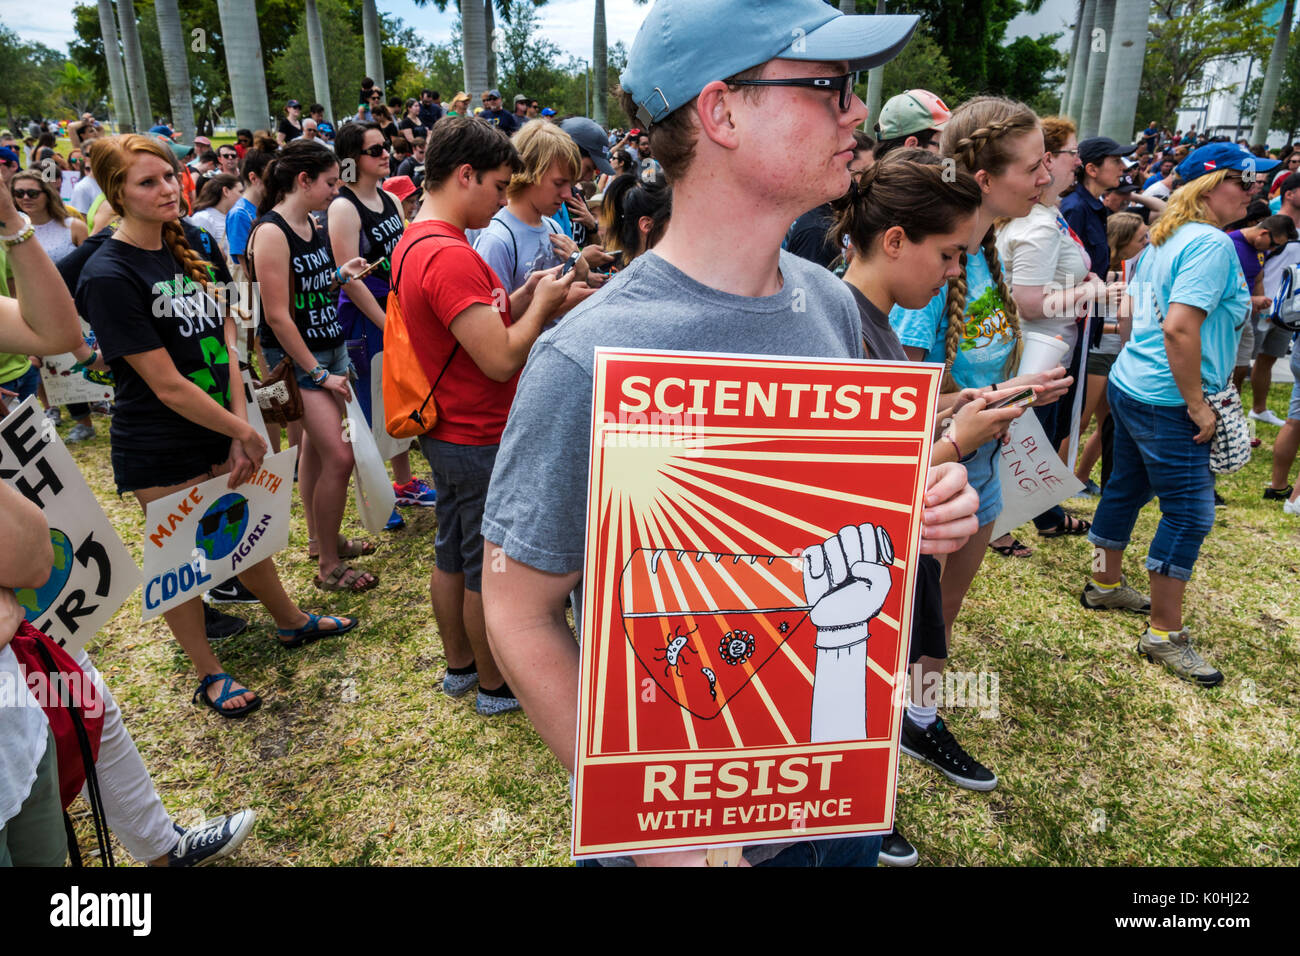 Miami Florida,Museum Park,March for Science,Protest,rallye,panneau,affiche,protester,adolescents adolescents adolescents adolescents garçons,mâle enfant enfants enfants yo Banque D'Images